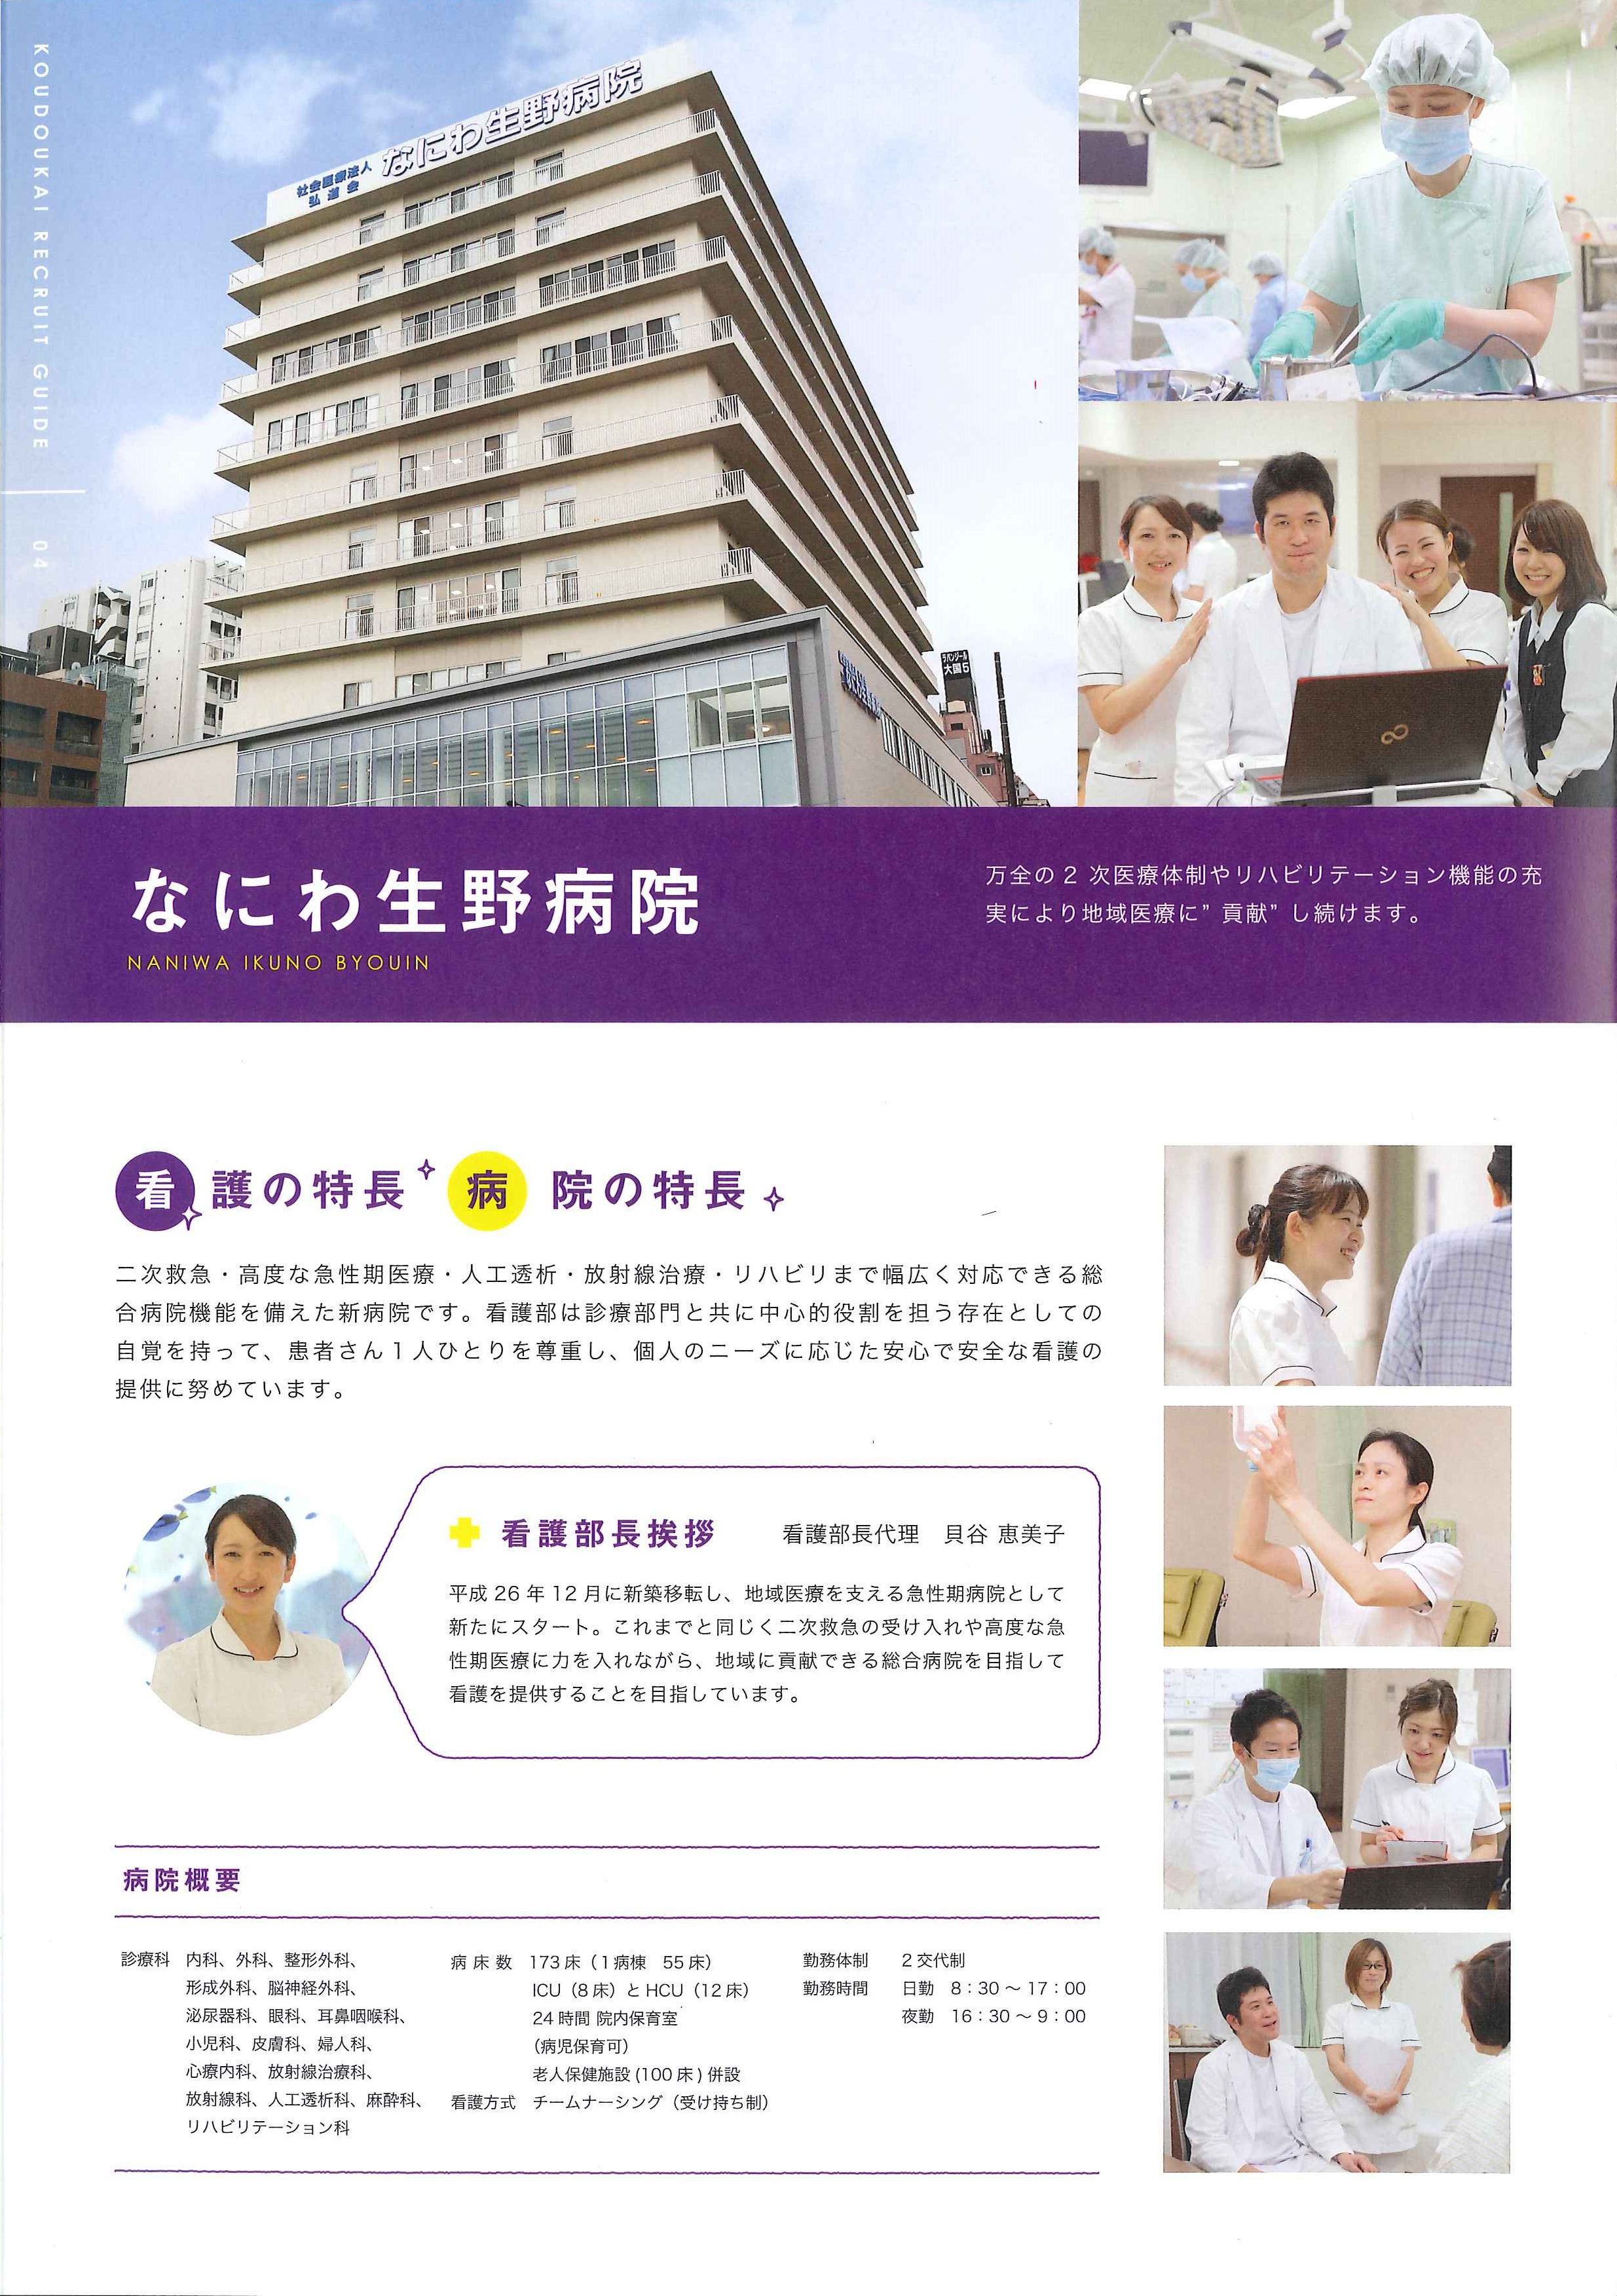 なにわ生野病院 社会医療法人 弘道会 ナスナス 看護師 看護学生のための就職情報サイト